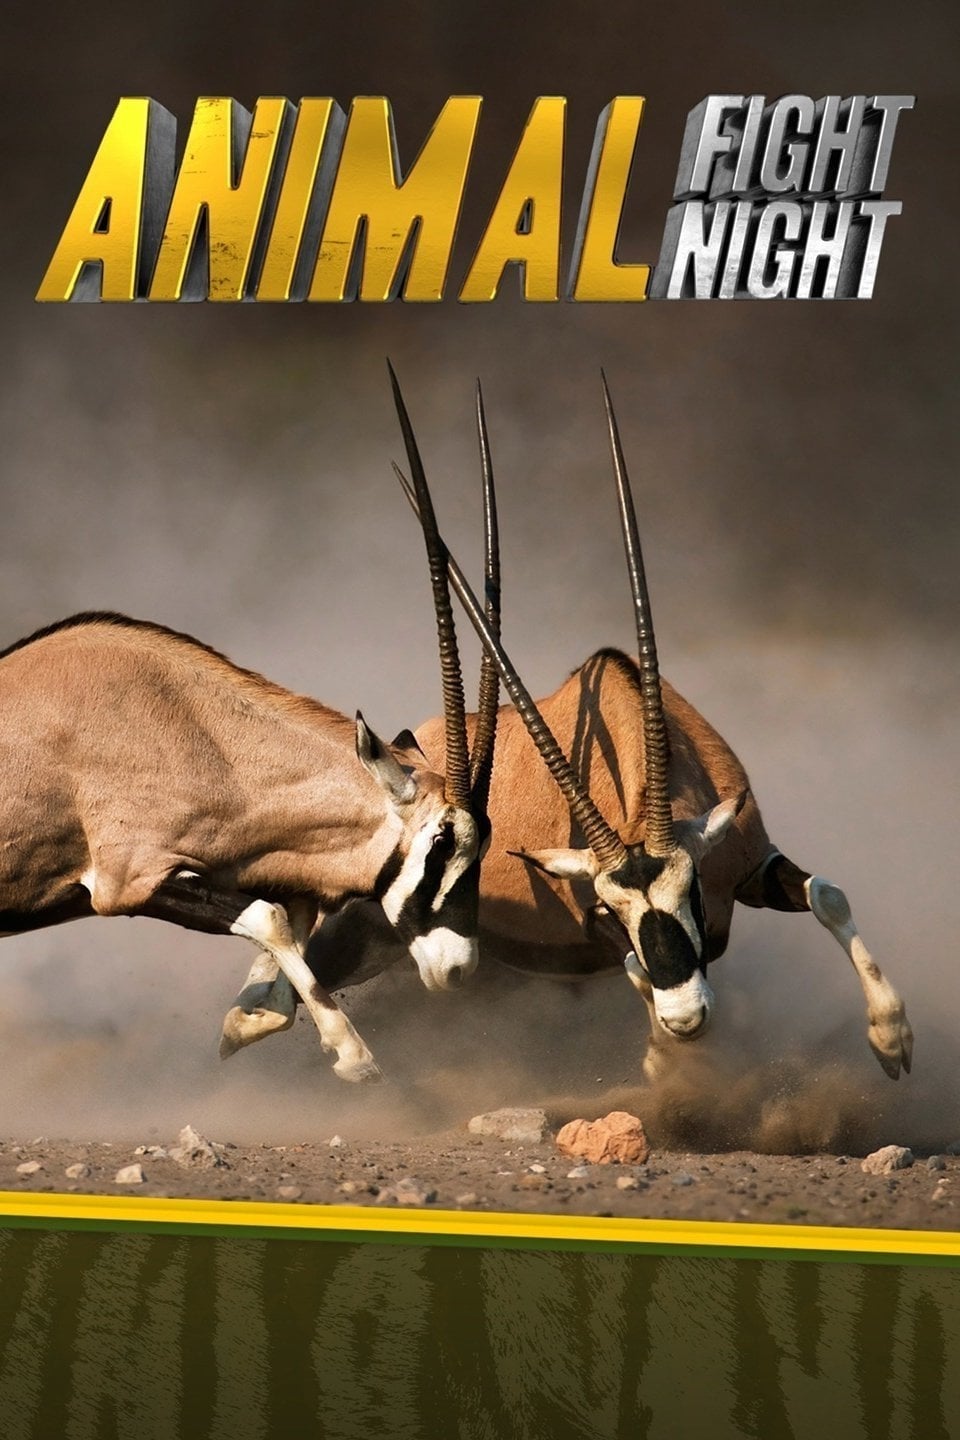 Caratula de Animal Fight Night (El club de la lucha animal) 